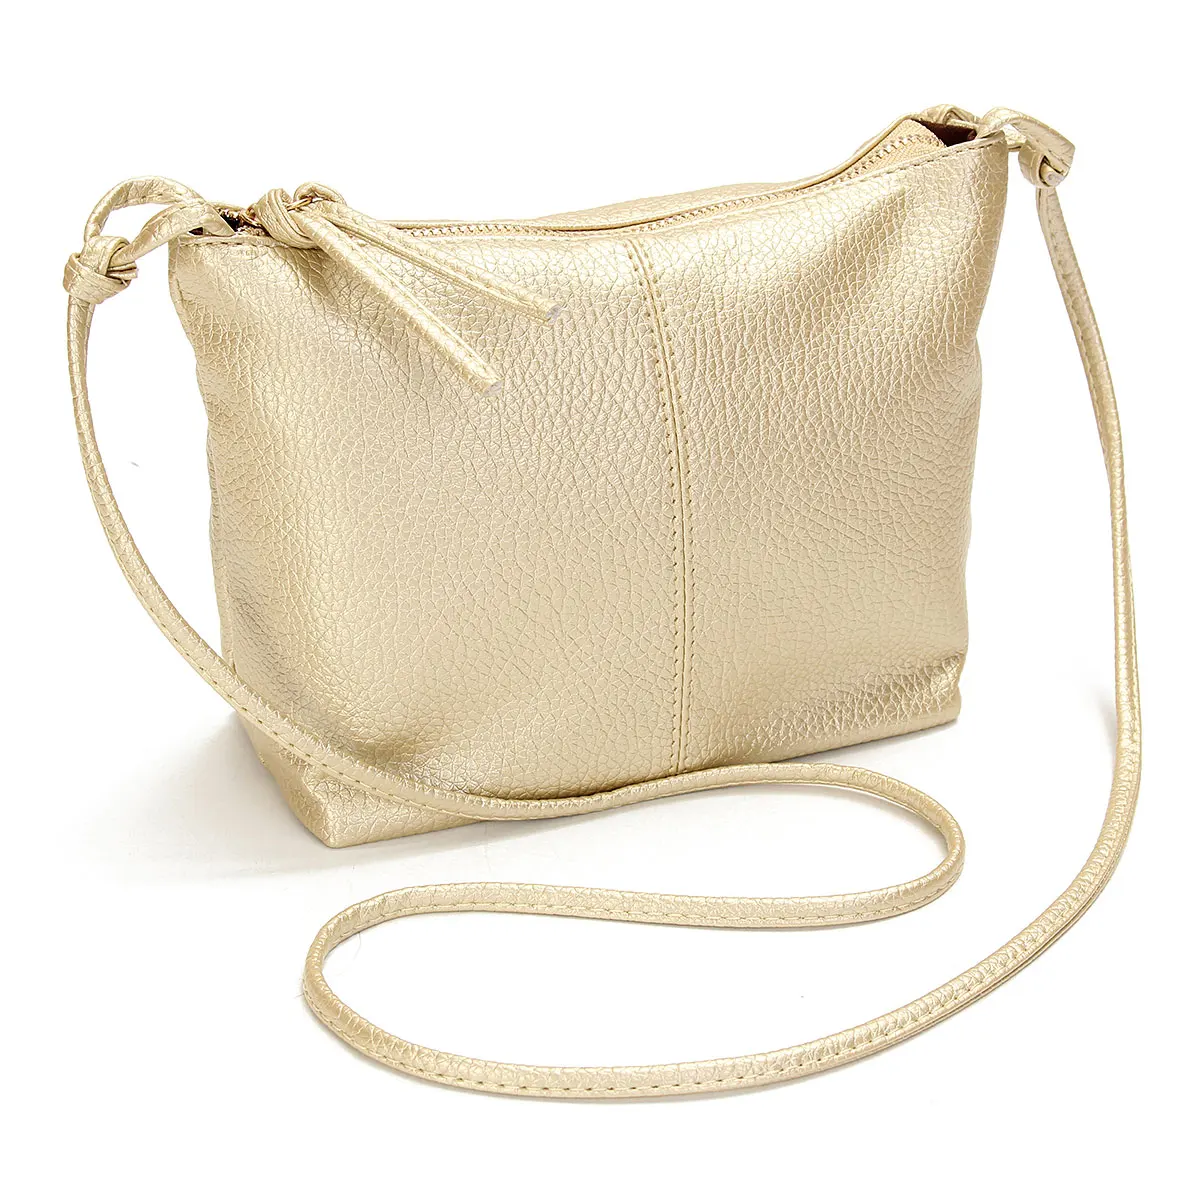 Aequeen мини-сумка новая модная сумка на плечо для телефона с монеткой Маленькая женская сумка-мессенджер из искусственной кожи Одноцветный клатч на молнии через плечо